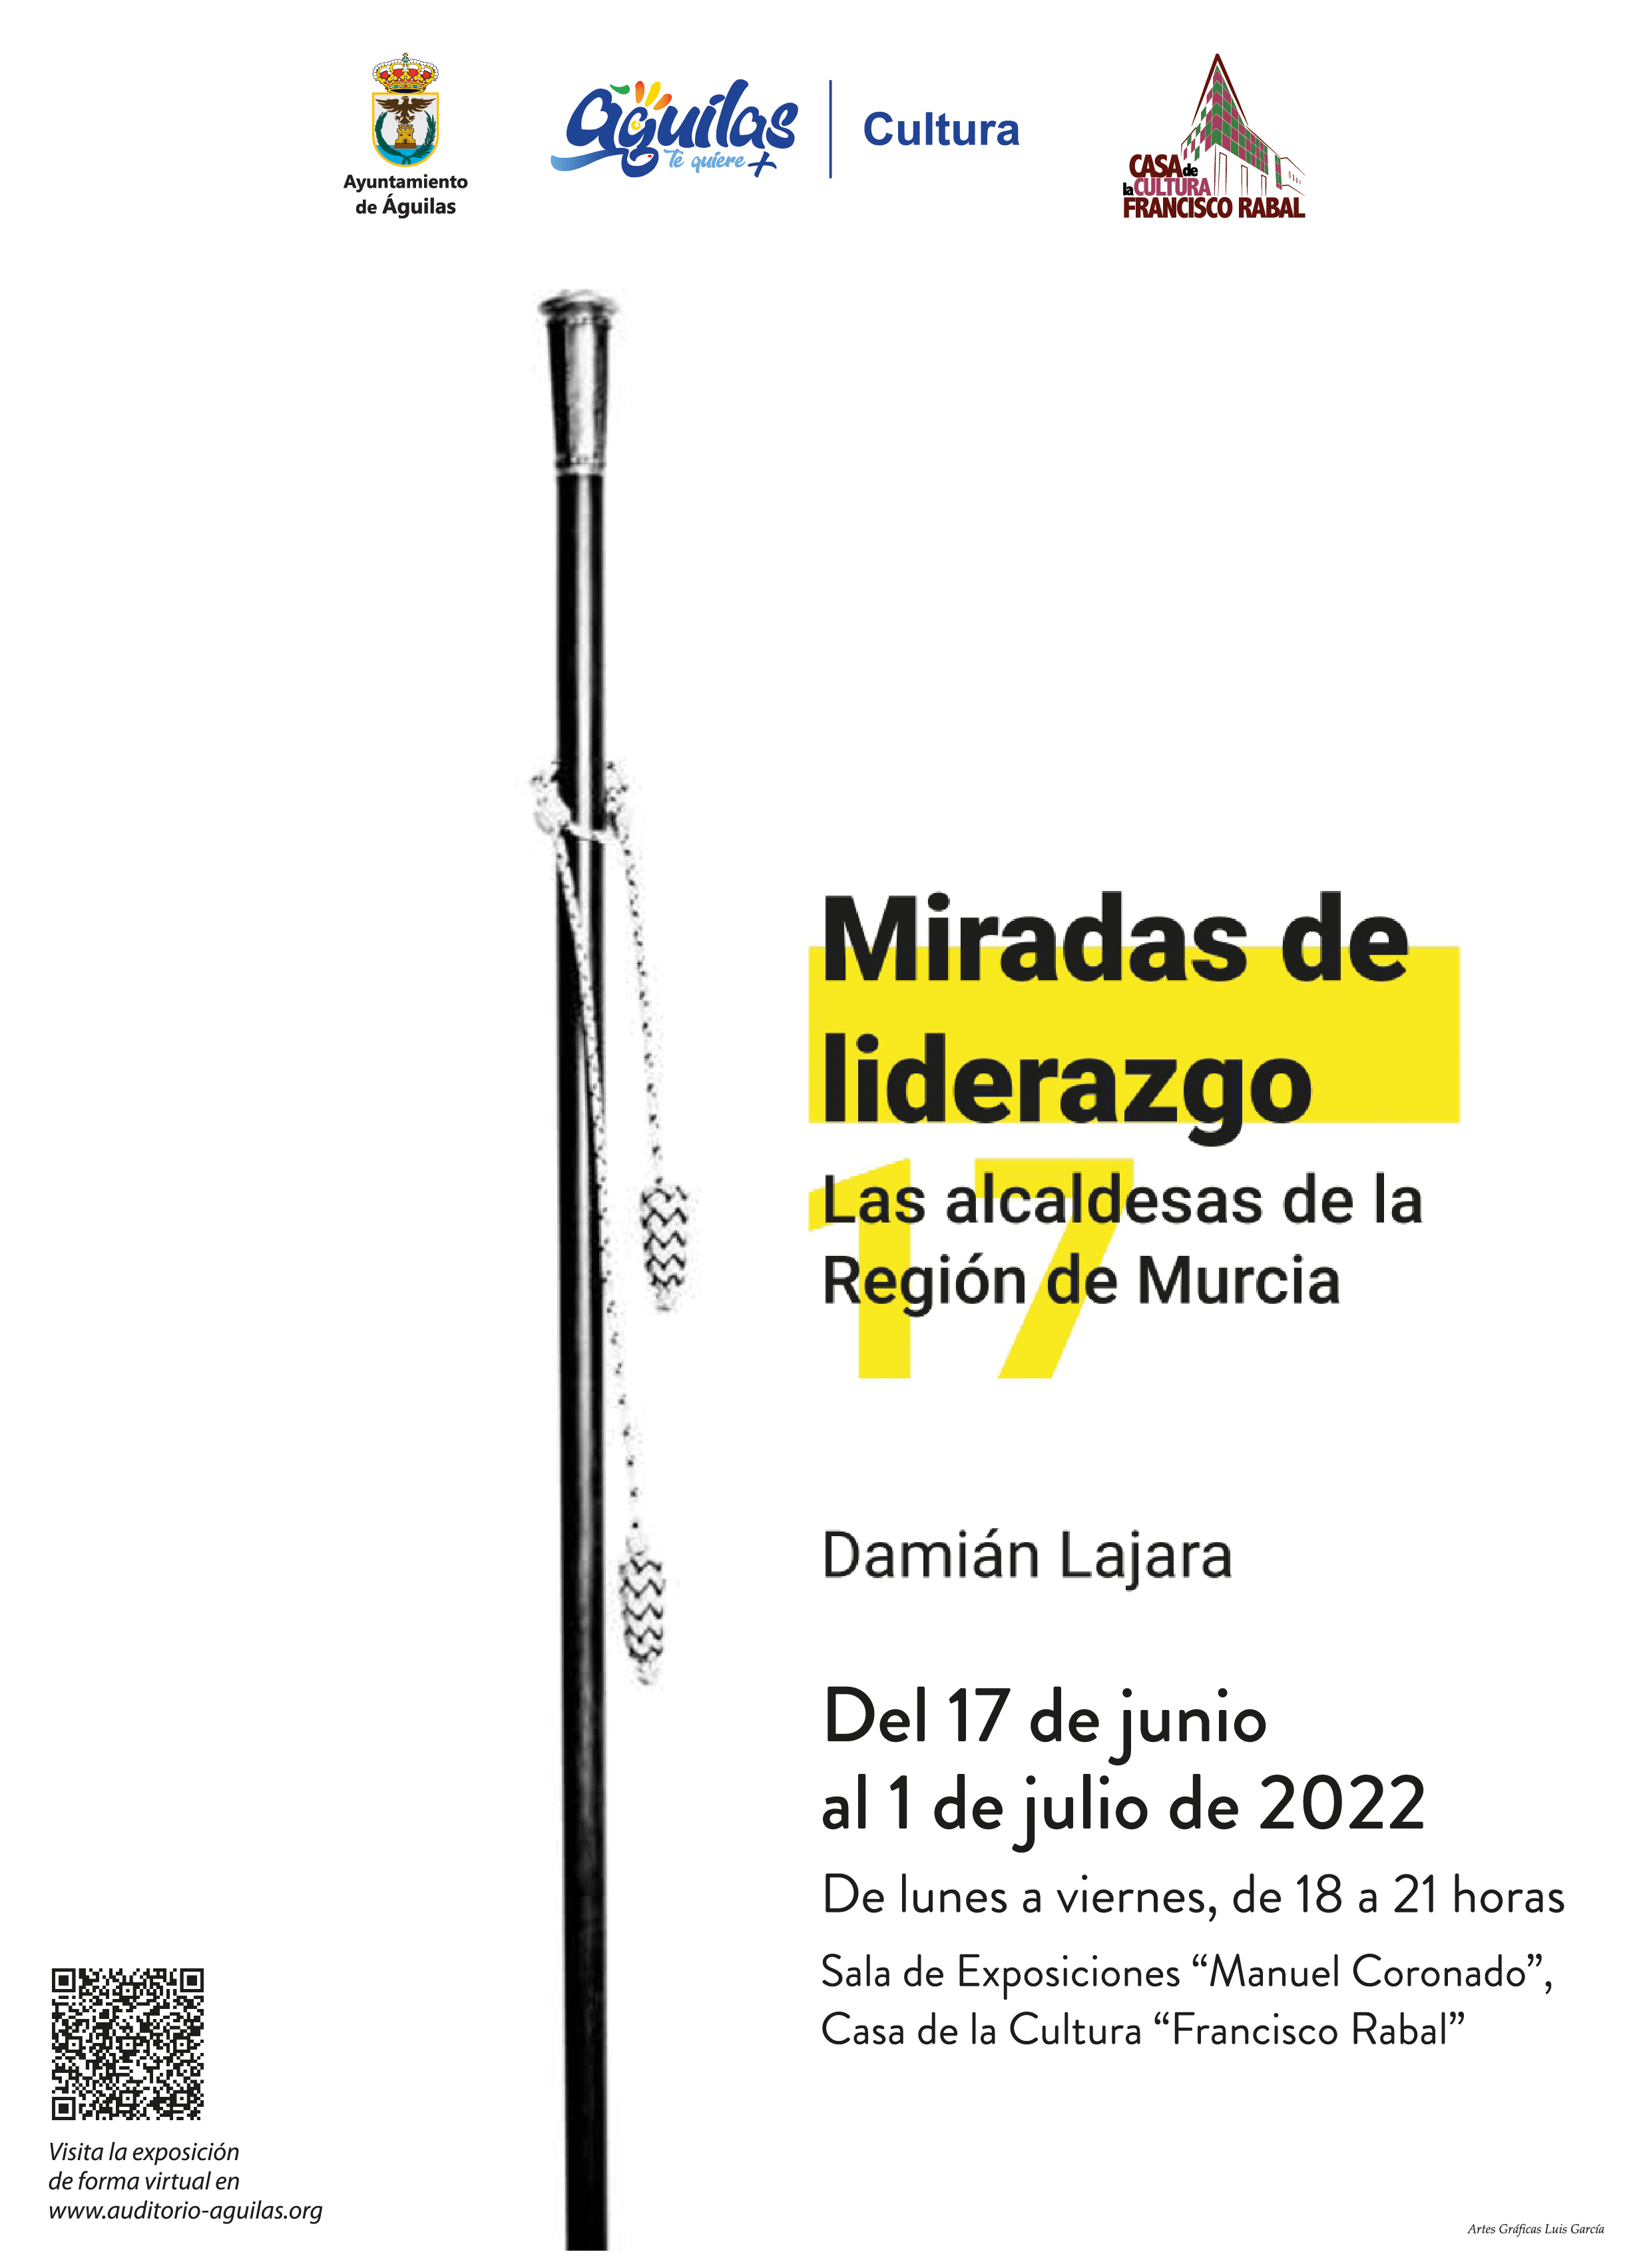  Exposición Miradas de Liderazgo, Las alcaldesas de la Región de Damián Lajara